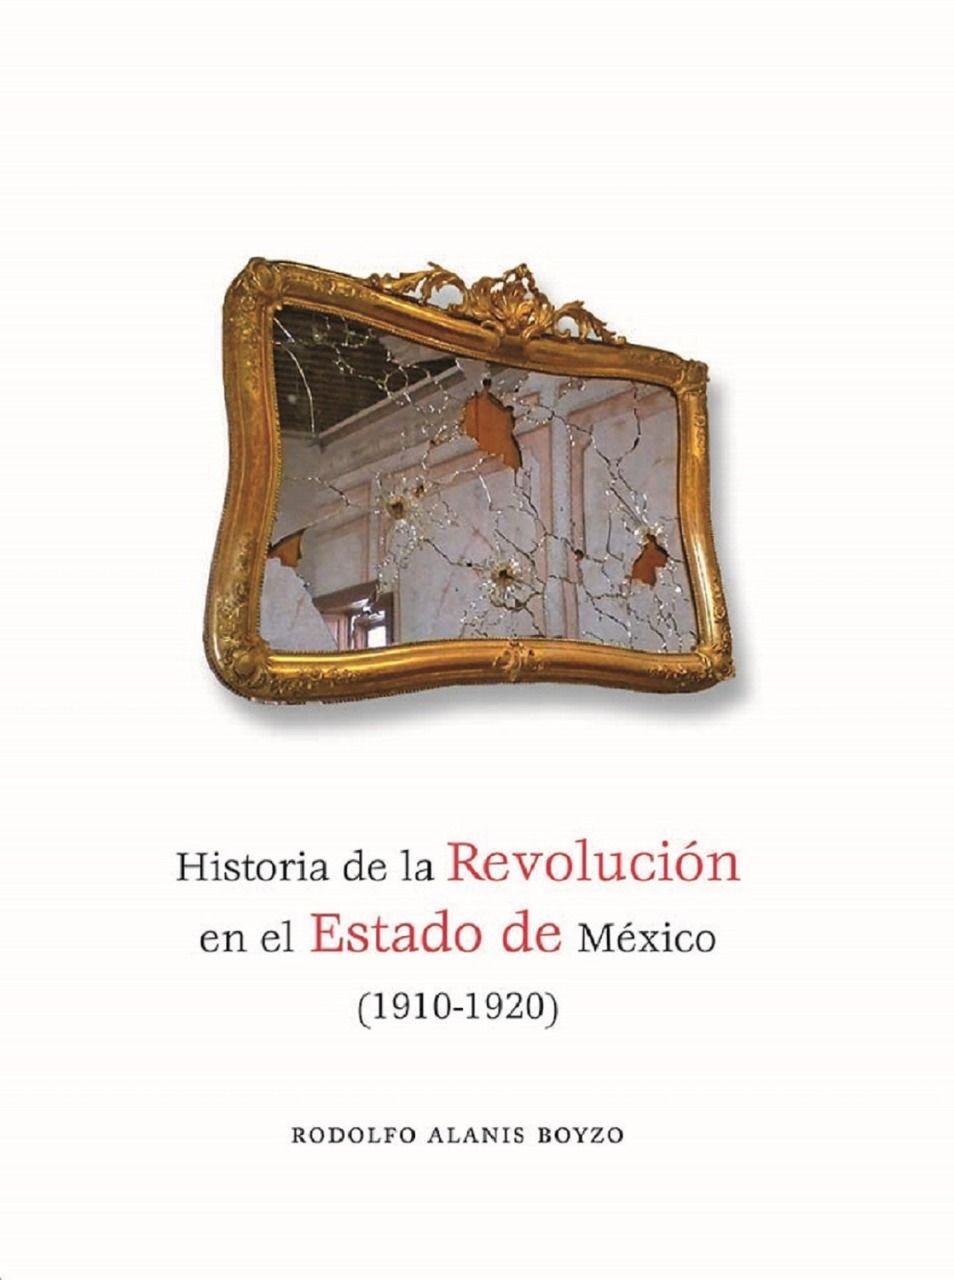 Recomiendan lectura de ’Historia de la Revolución en el Estad de México’